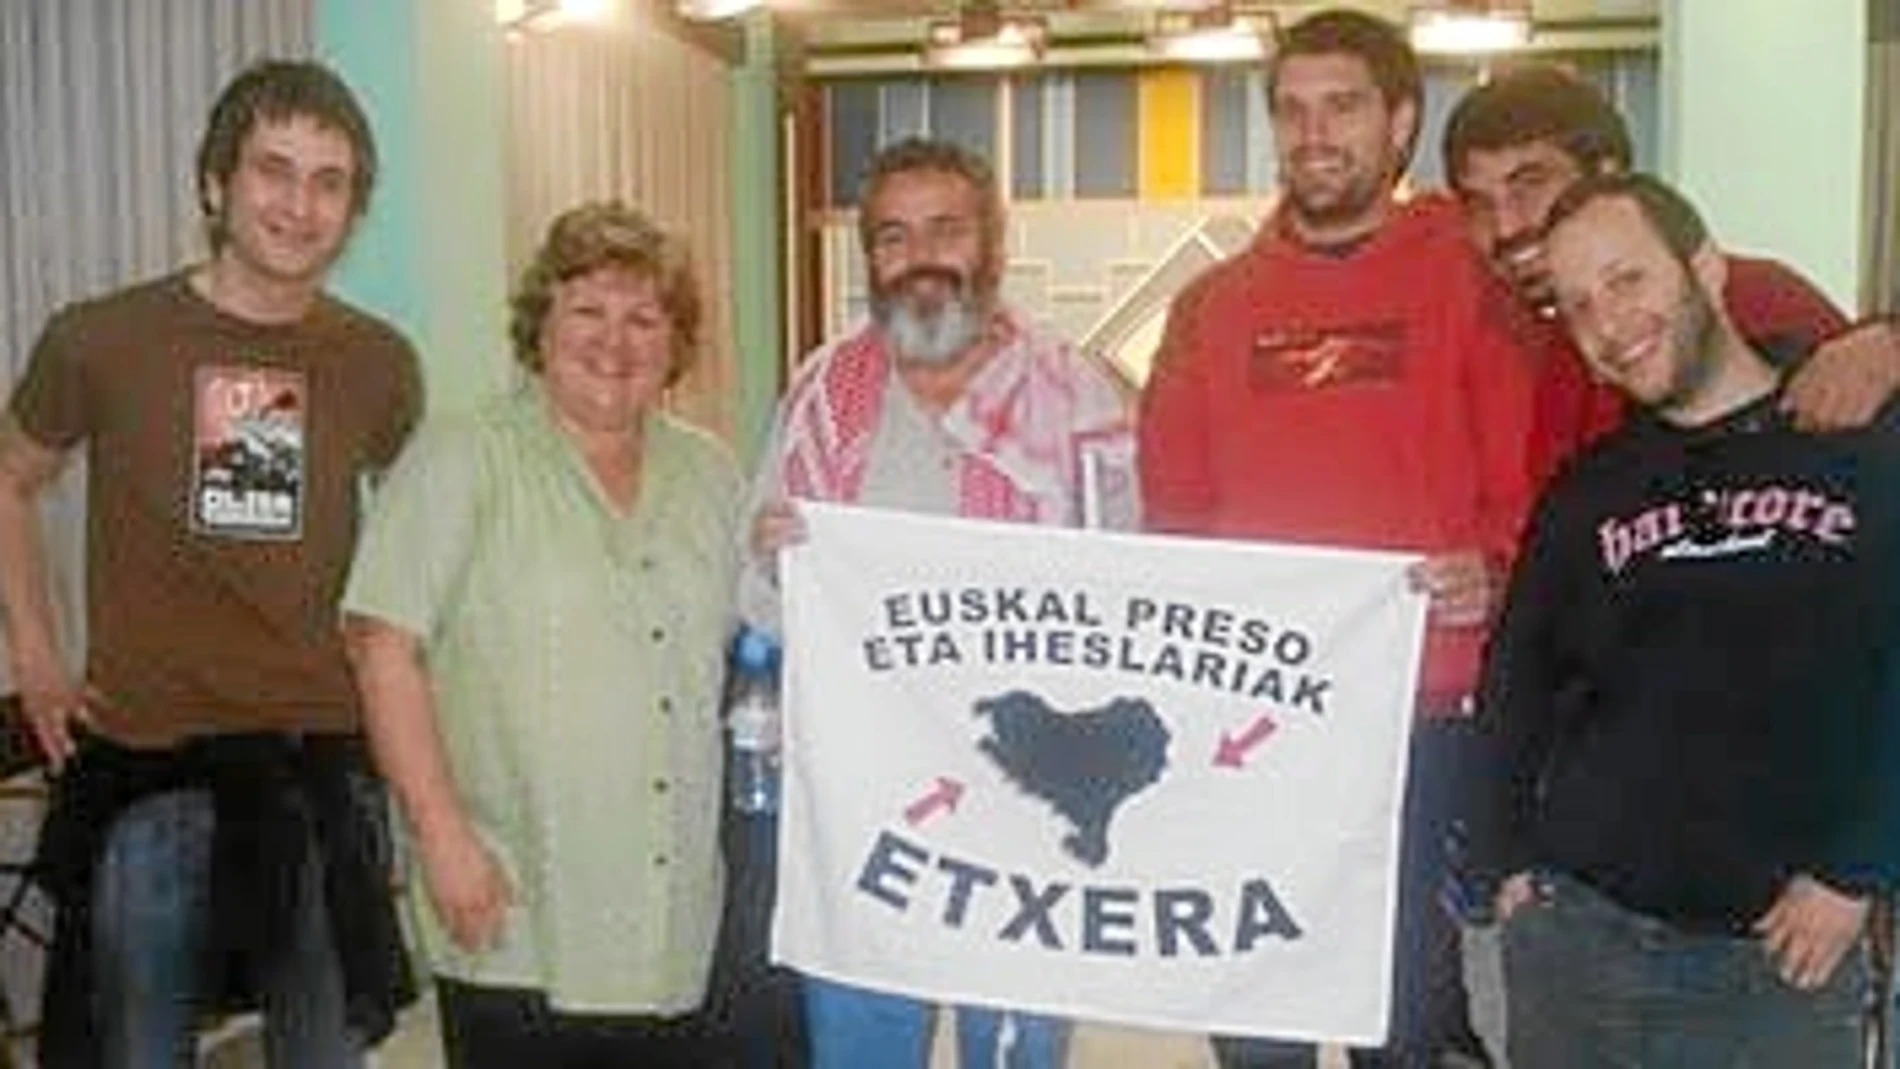 El alcalde de Marinaleda invitó a jóvenes del entorno proetarra, que dieron conferencias en Granada y Cádiz, a la televisión municipal